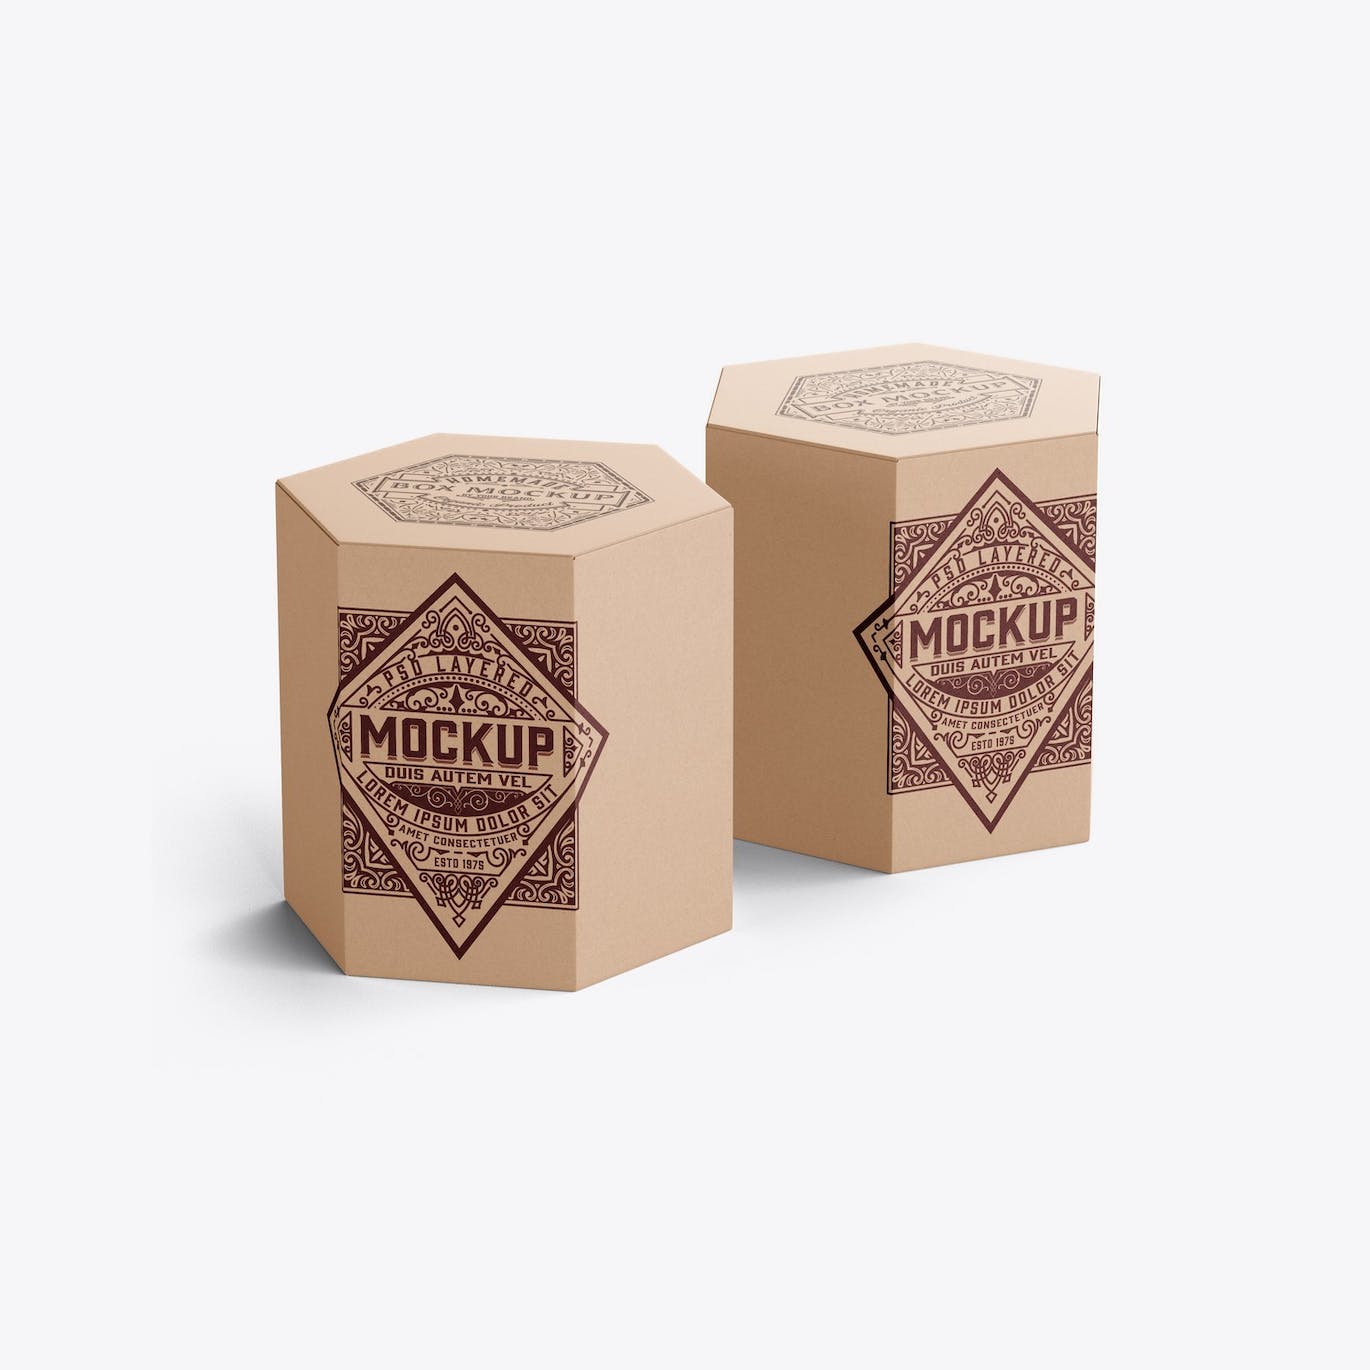 六边形长方体纸盒包装设计样机 Hexagonal Box Mockup 样机素材 第11张